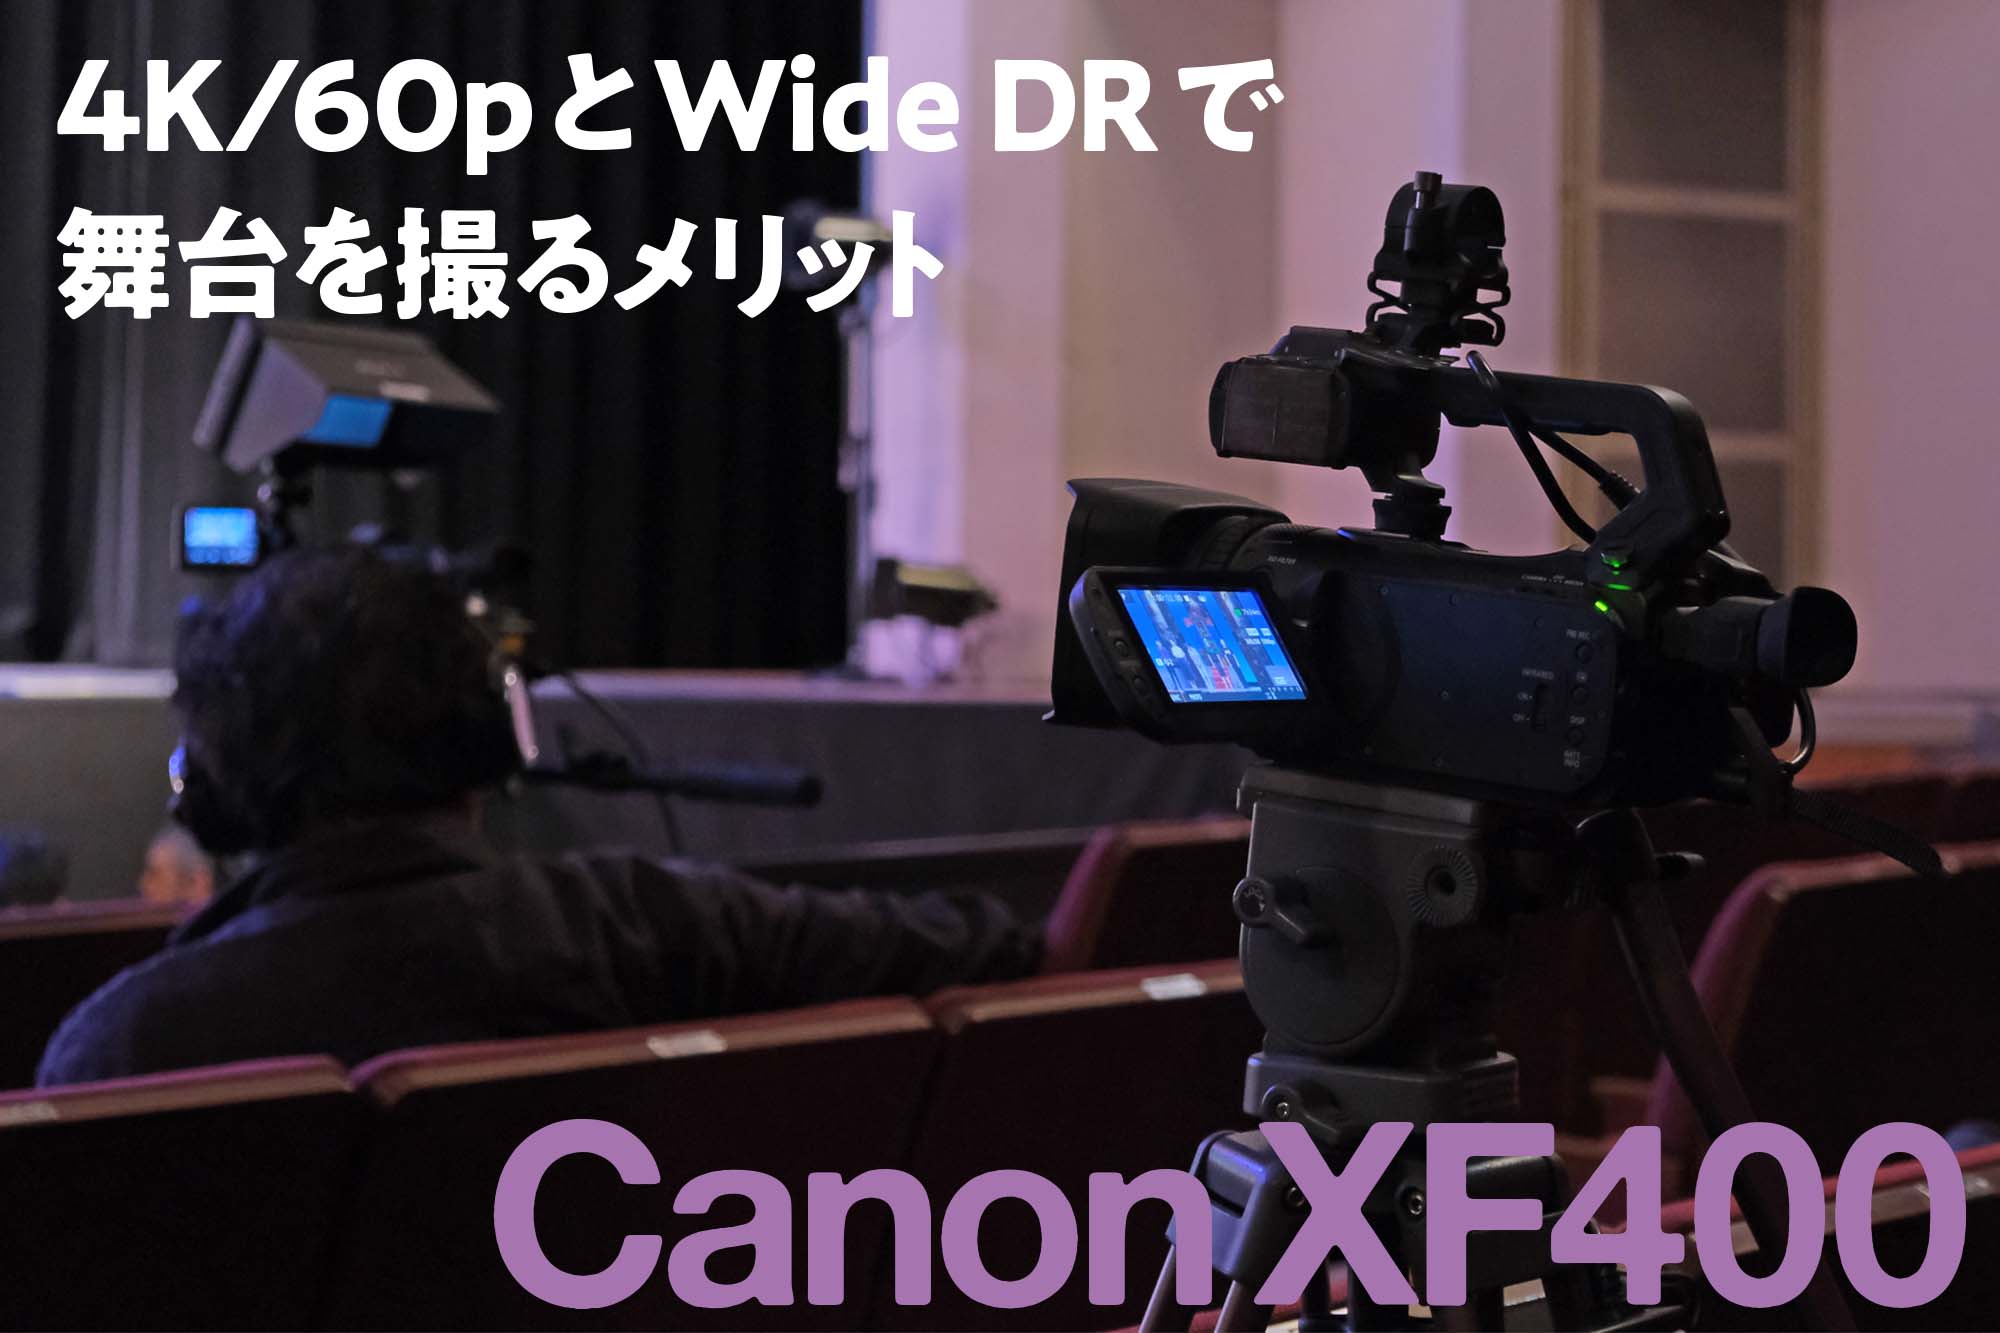 キヤノン XF400】 4K/60pとWide DRで 舞台を撮るメリット | VIDEO SALON